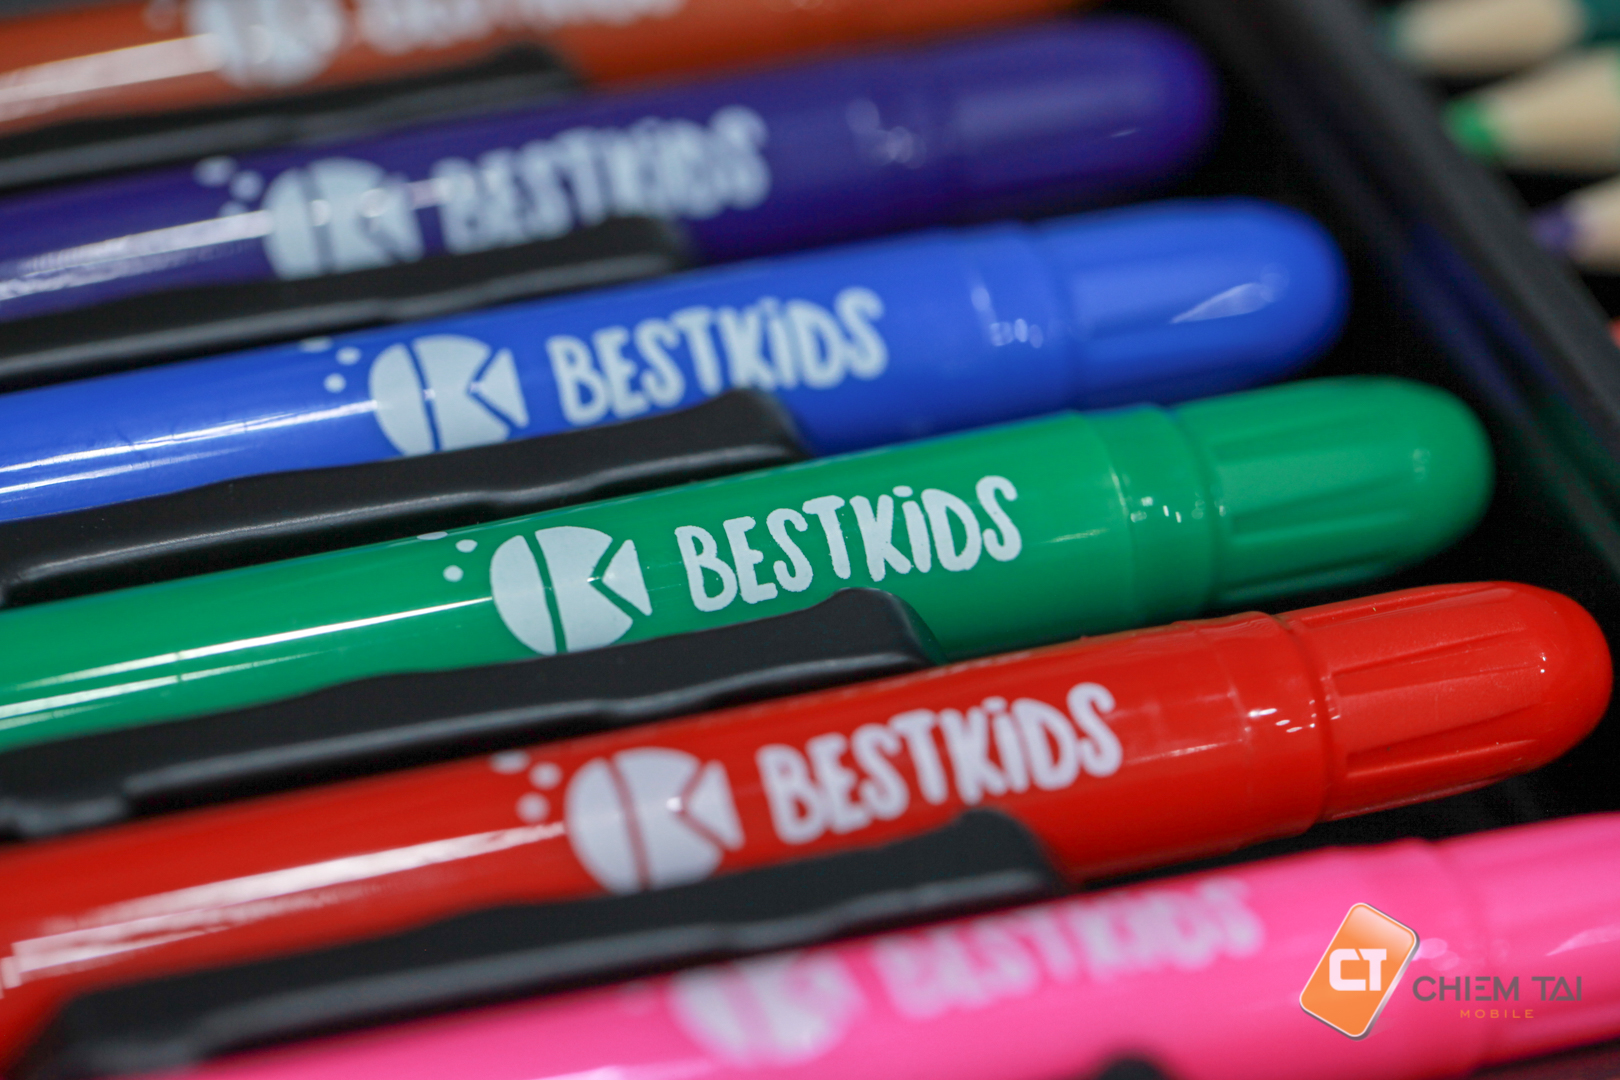 Bộ bút màu cho bé BestKids